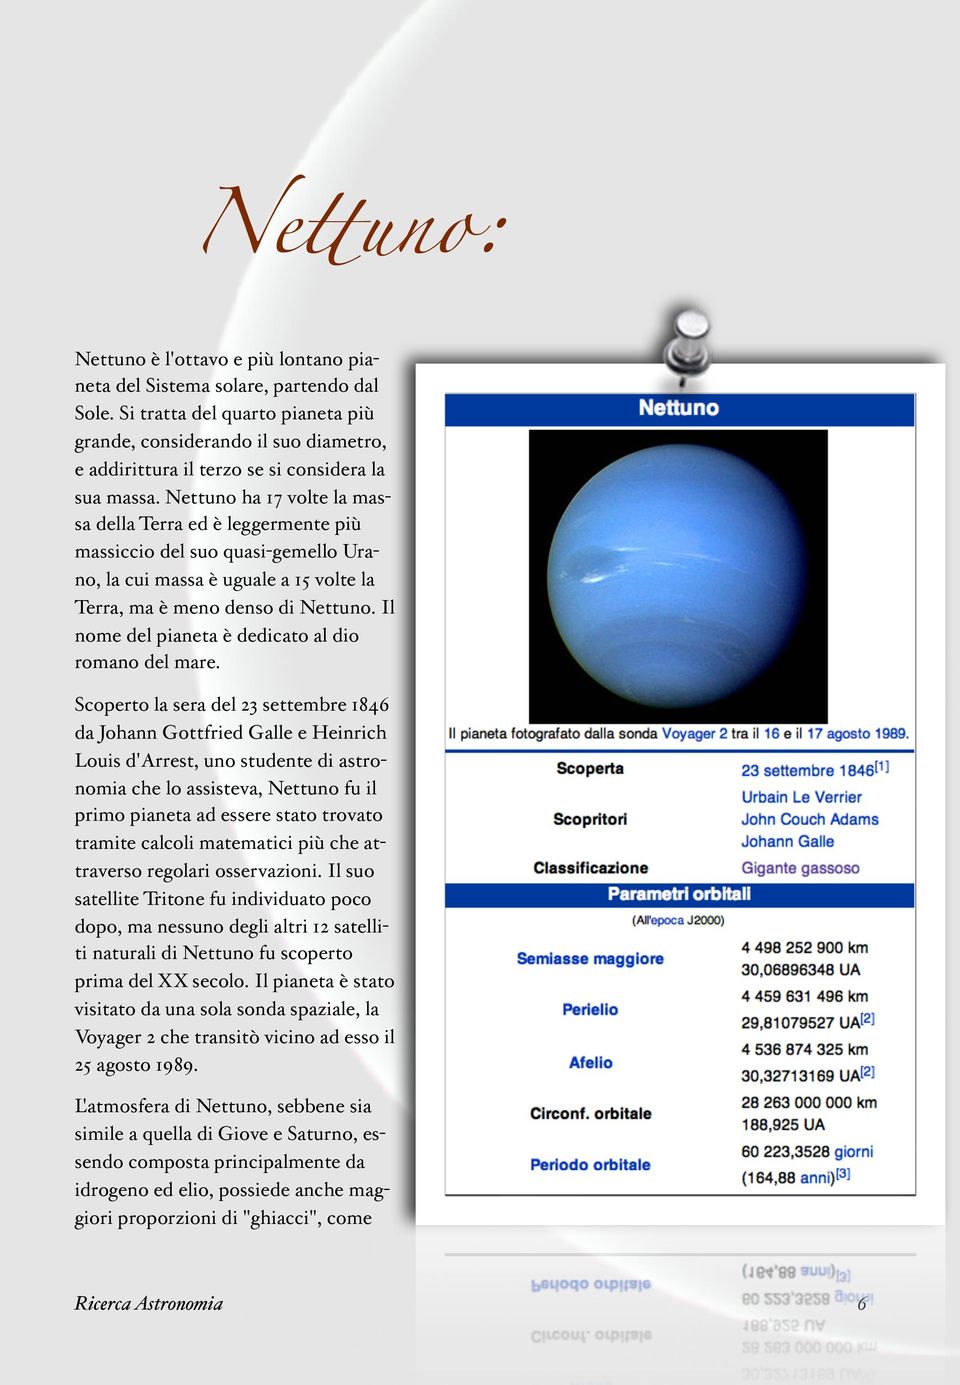 Nettuno ha 17 volte la massa della Terra ed è leggermente più massiccio del suo quasi-gemello Urano, la cui massa è uguale a 15 volte la Terra, ma è meno denso di Nettuno.